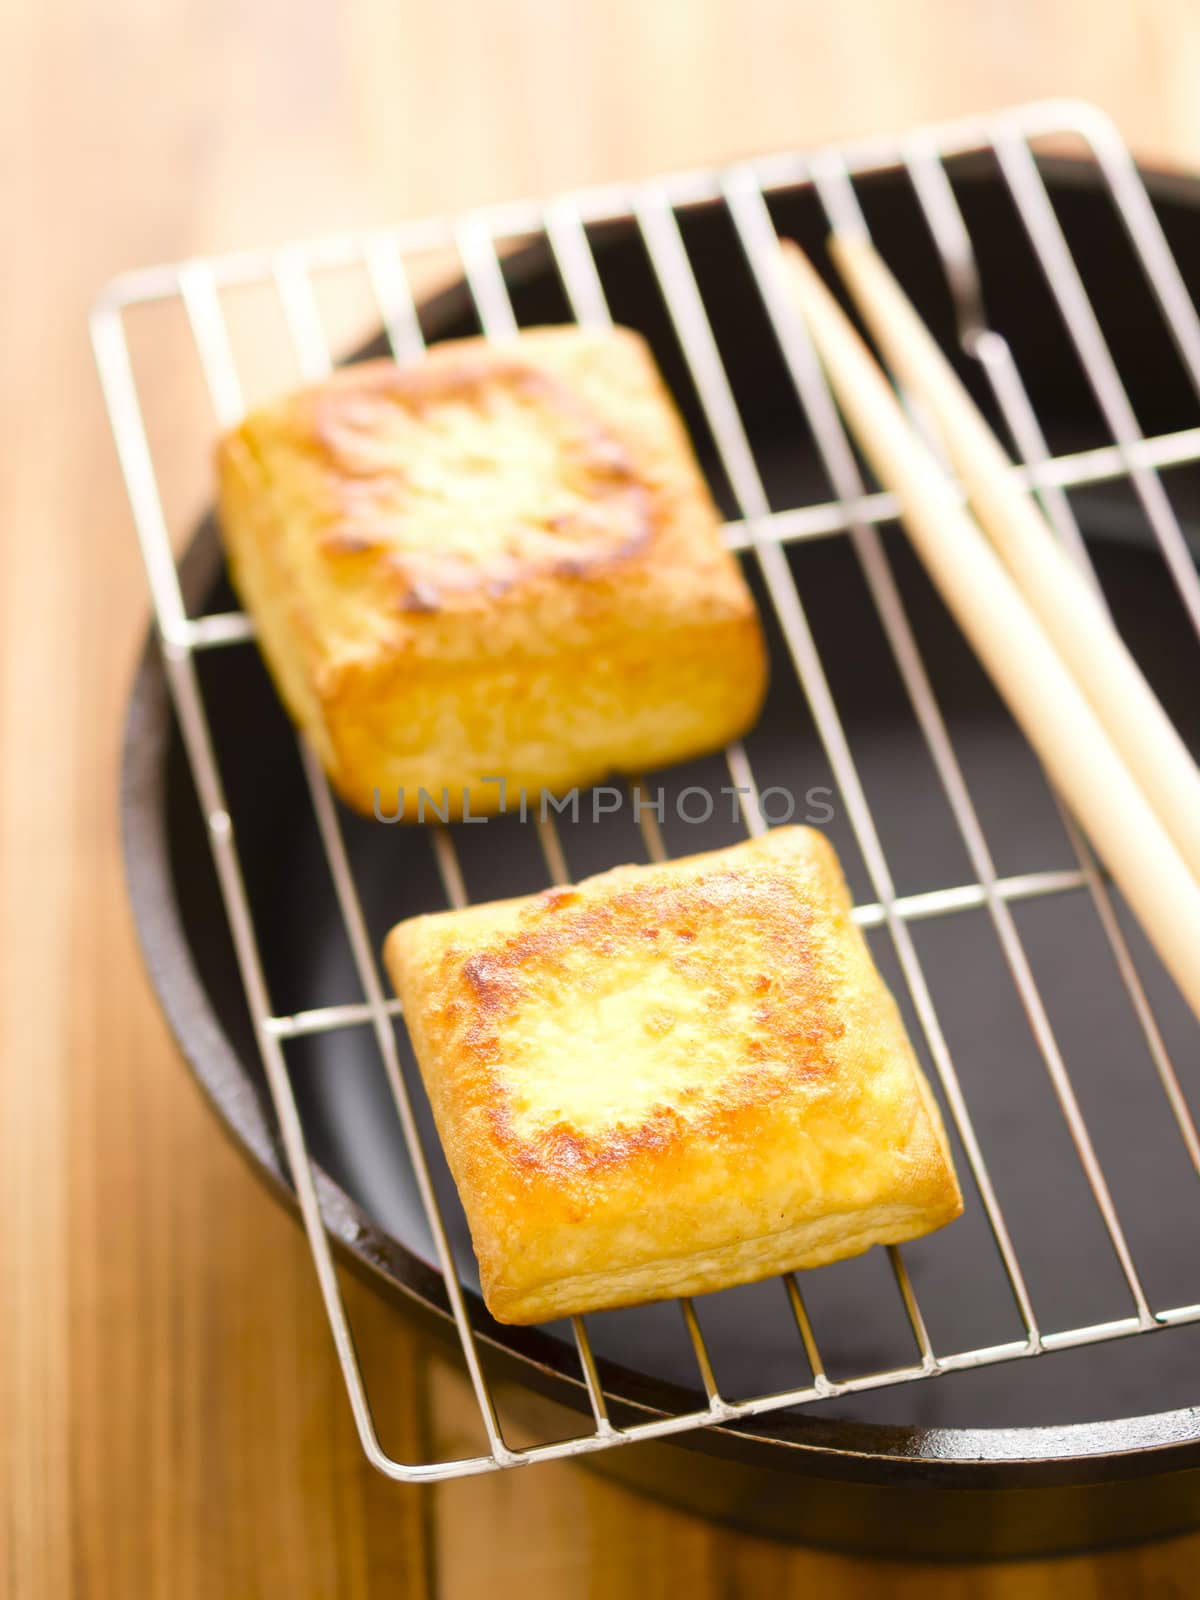 fried tofu cubes by zkruger